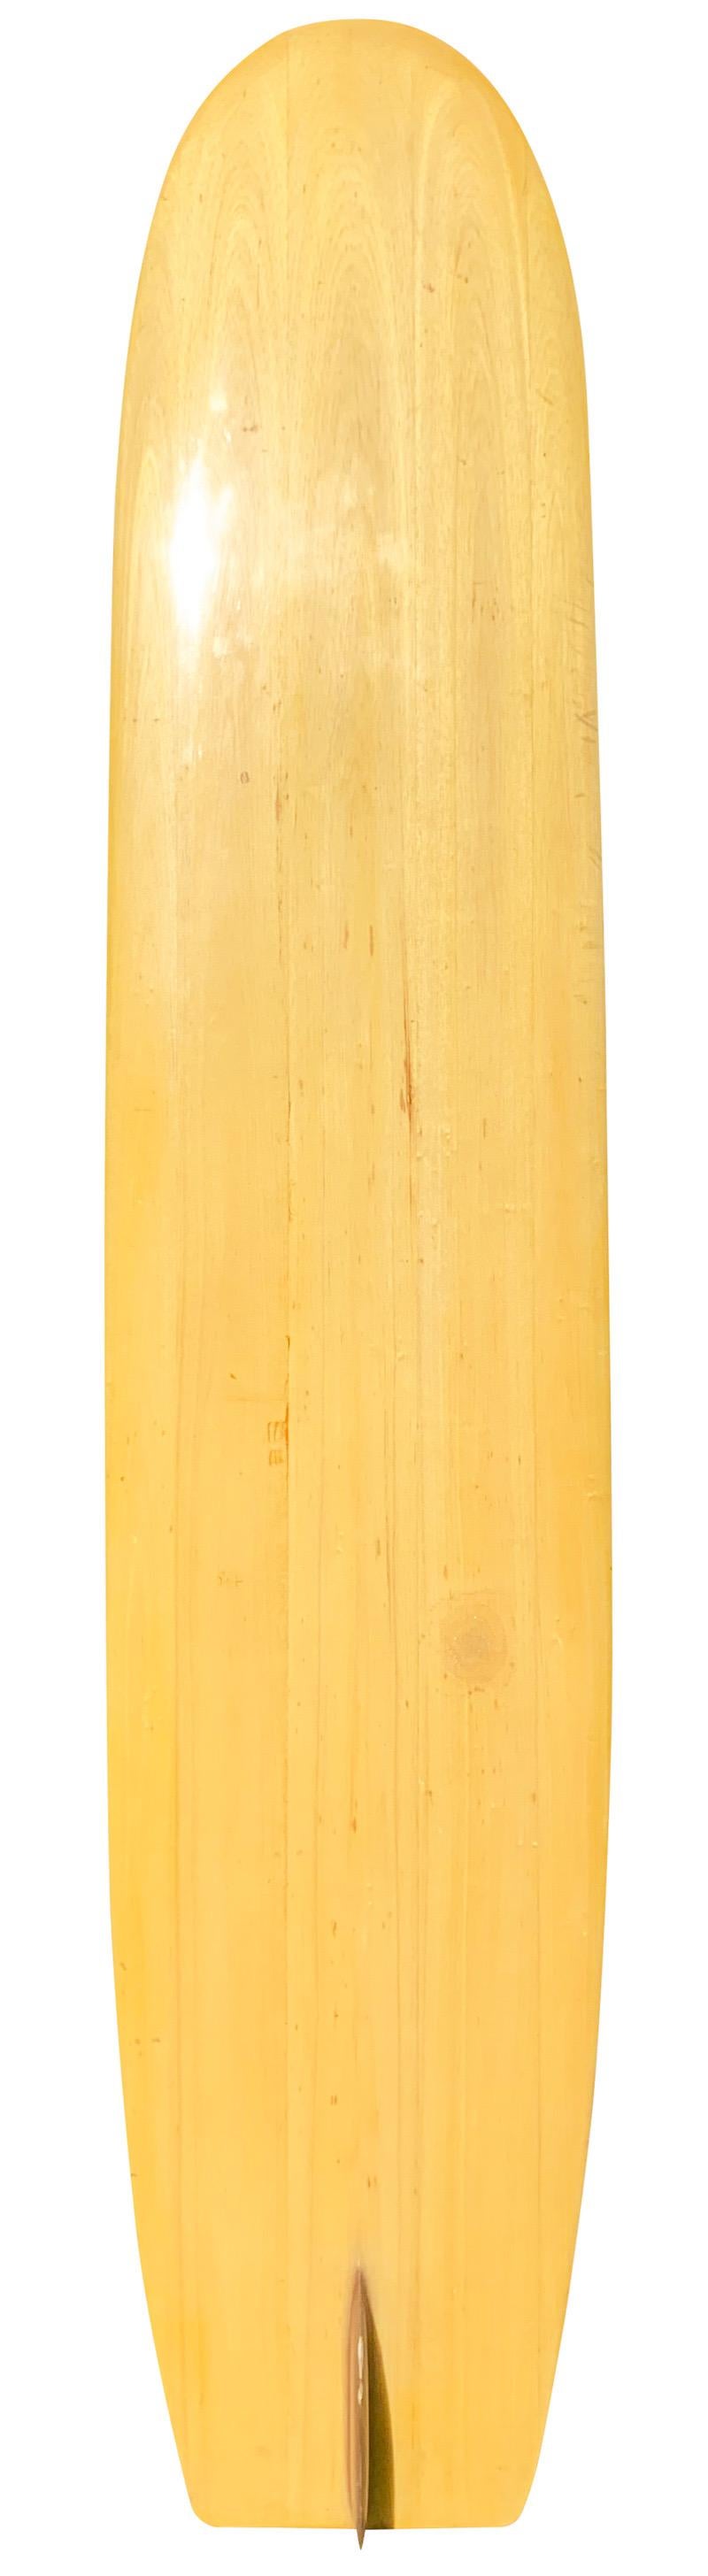 1950 Bob Simmons Longboard aus massivem Balsaholz, das in den 1990er Jahren nachgebaut wurde. Hergestellt vom ehemaligen Yater Surfboards Shaper Dan Highland. Eine frühe Balsaholz-Surfbrettform mit einer frühen Redwood-Einzelflosse. Hergestellt nach